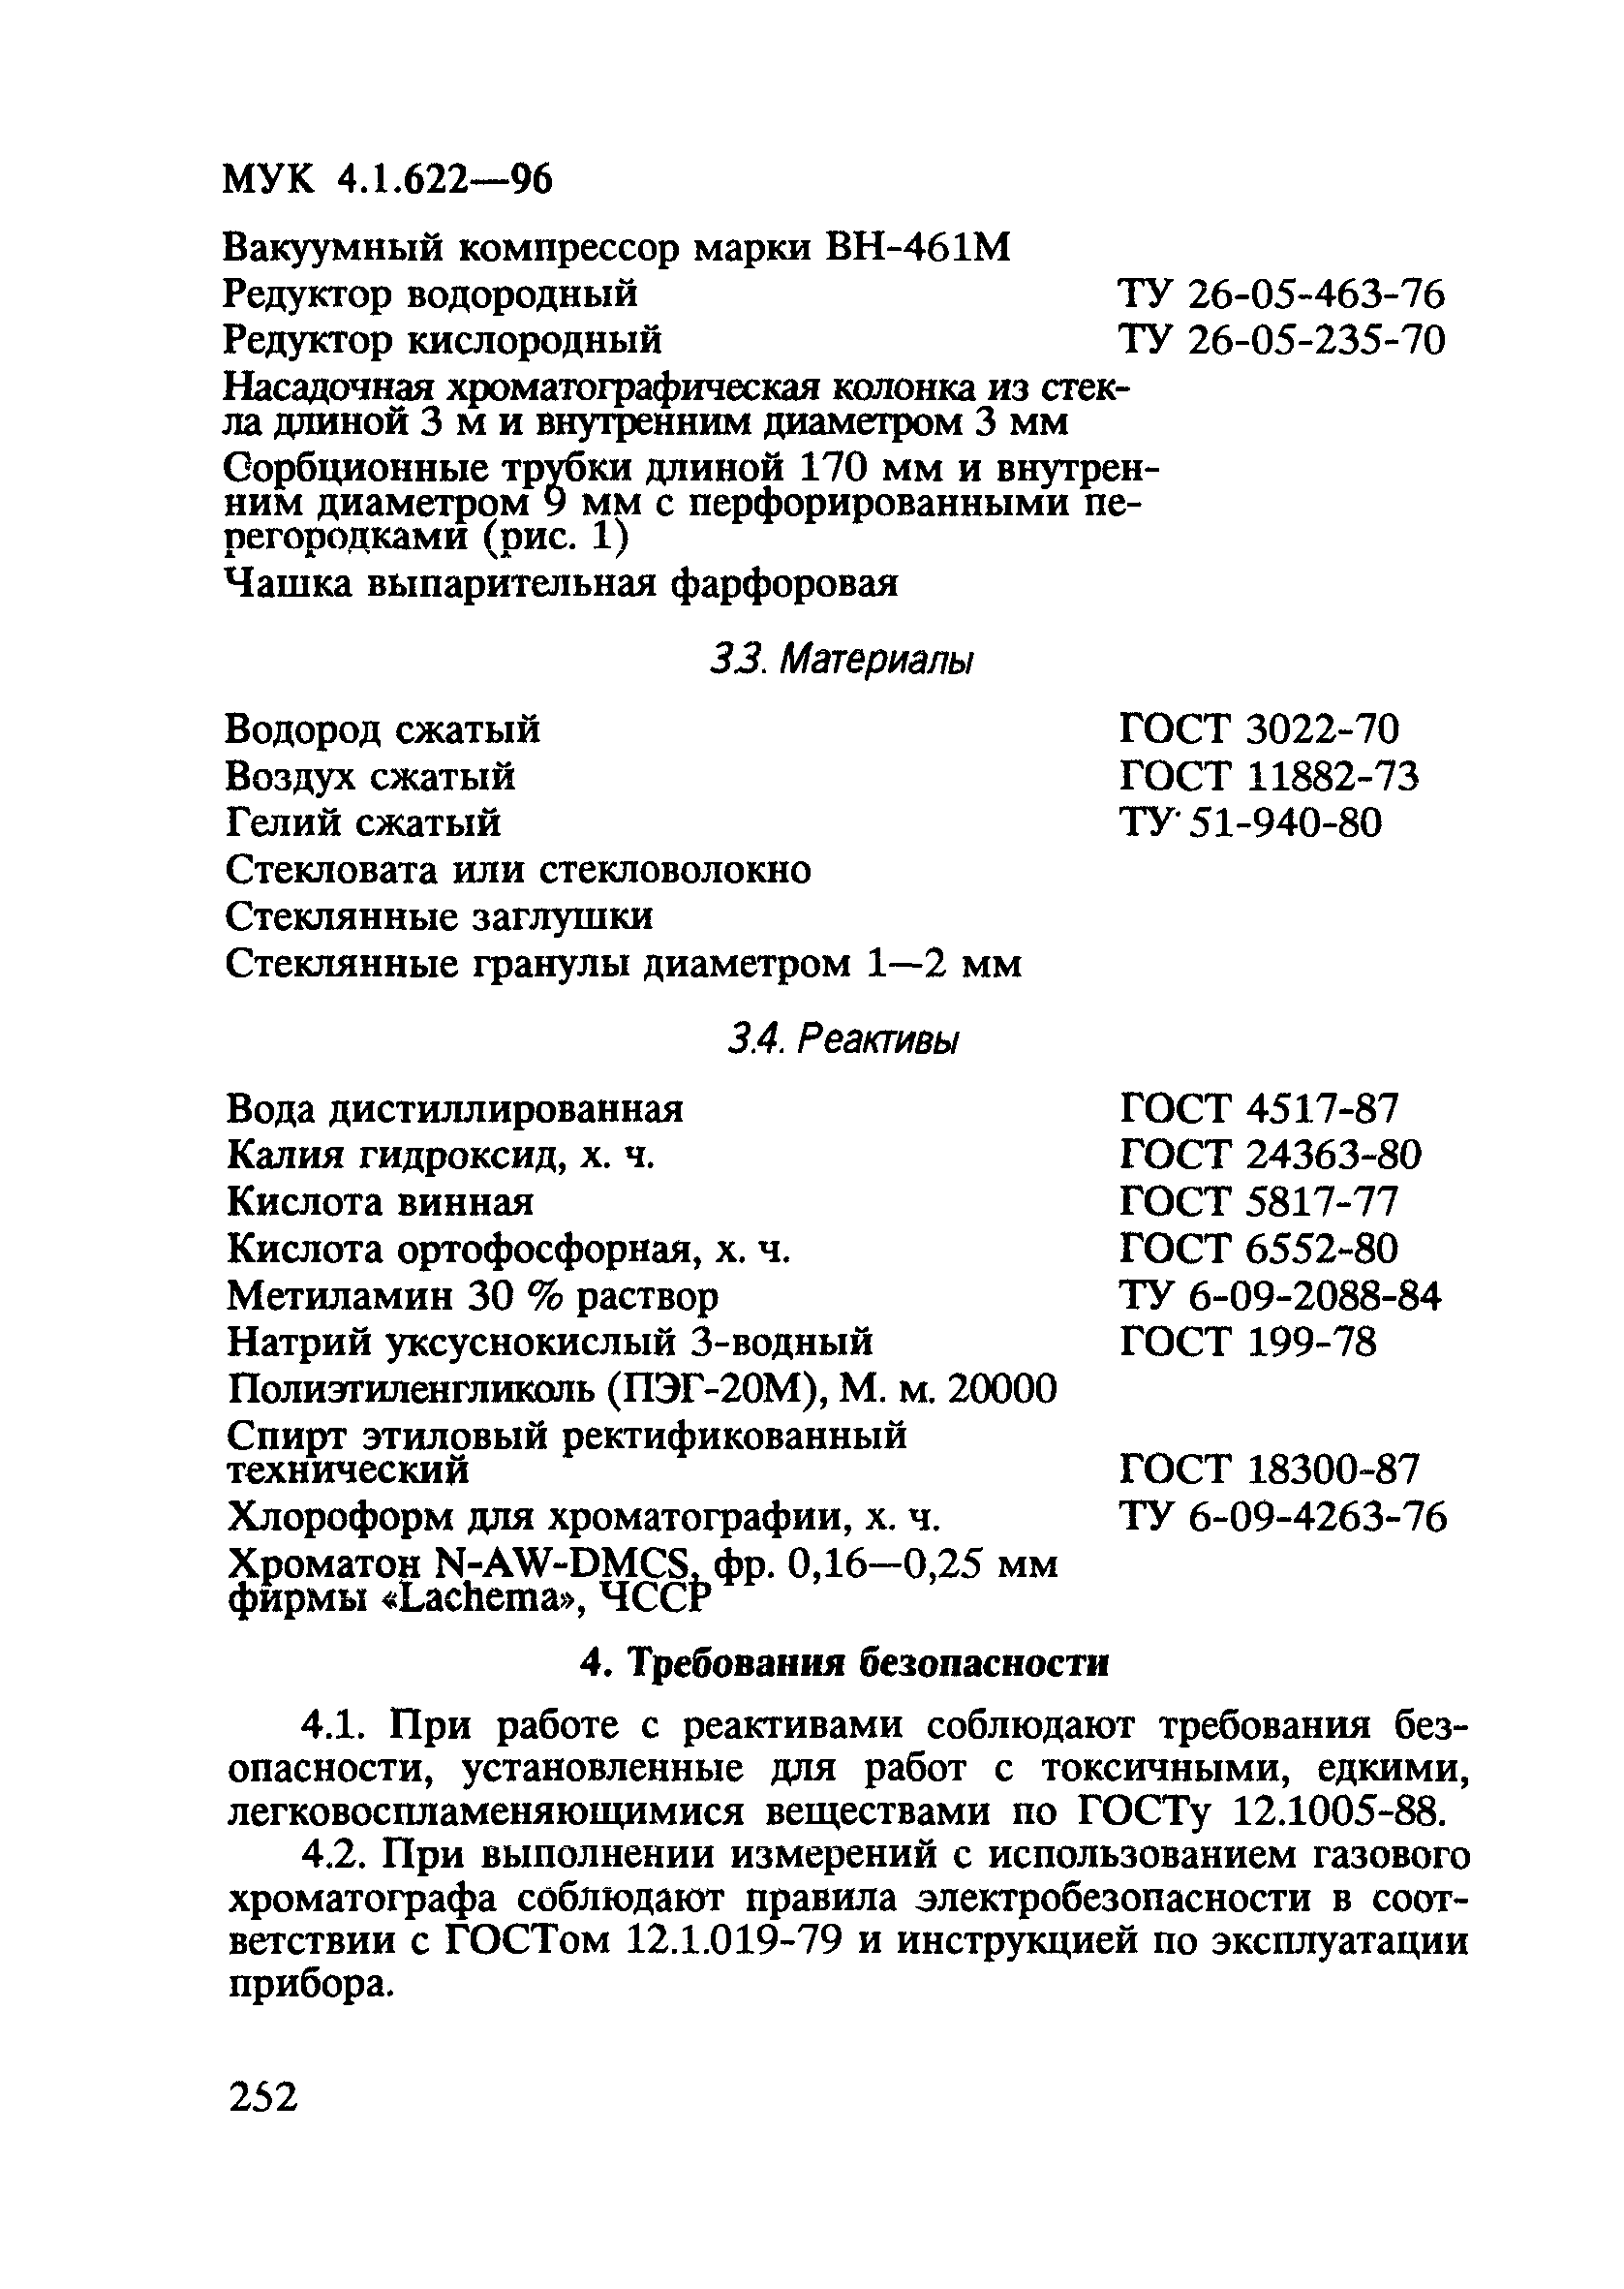 МУК 4.1.622-96